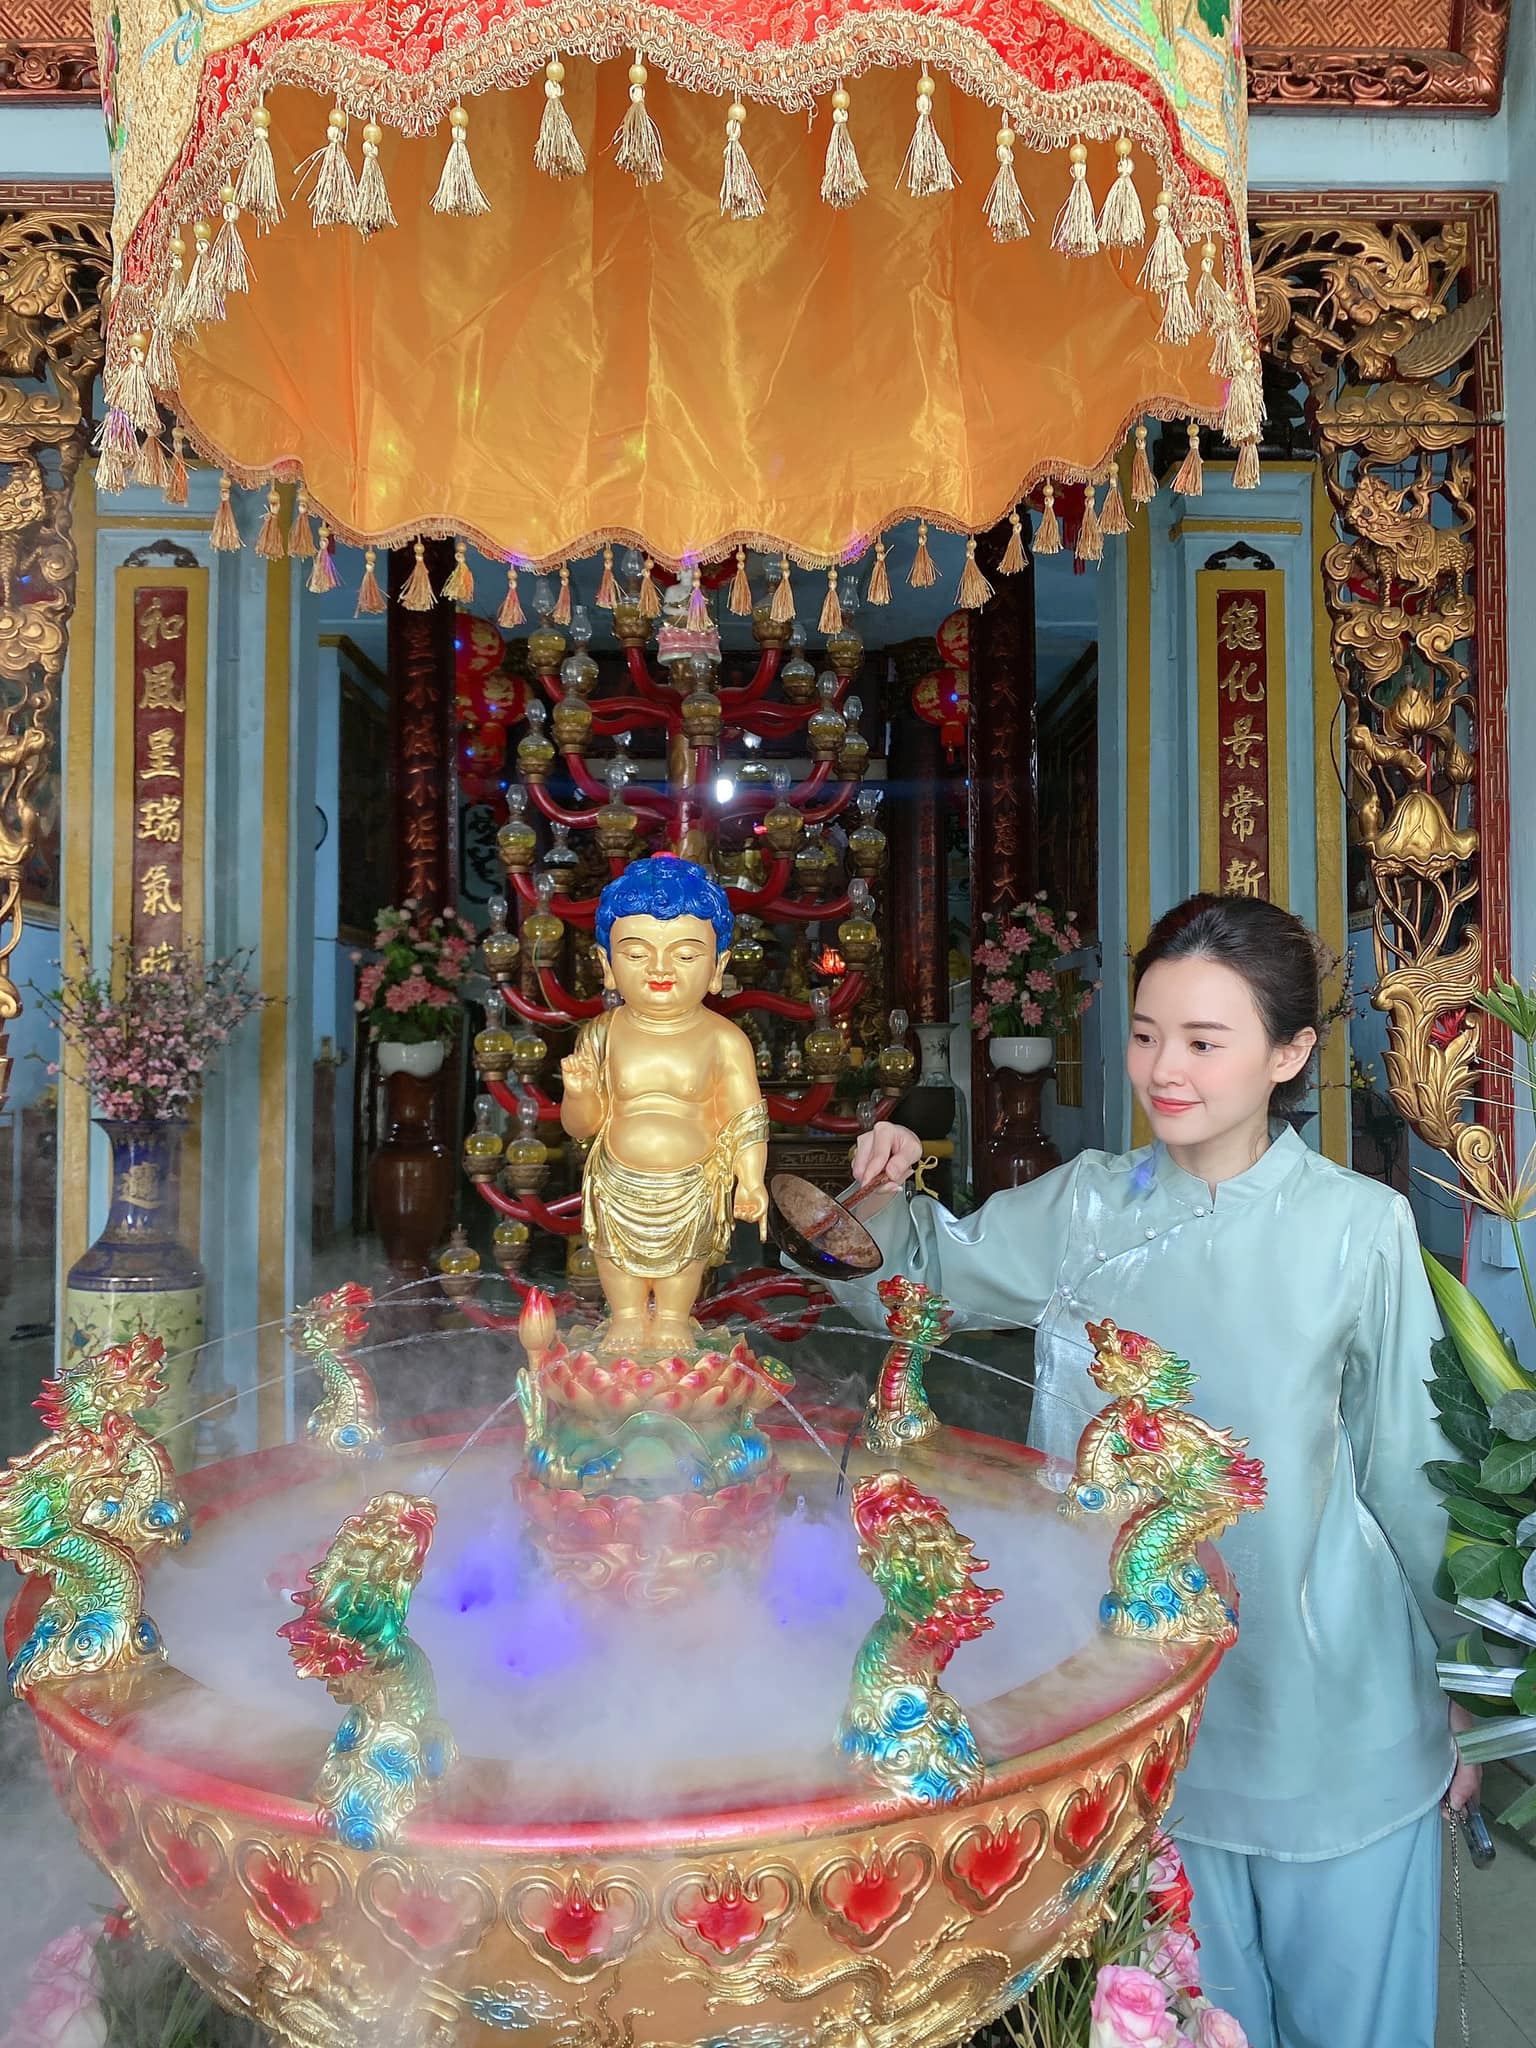 Midu mừng Đại lễ Phật đản: 'Mến chúc mọi người mọi điều an lành và hạnh phúc, tâm hoan hỉ, yêu thương và soi sáng thế gian'.